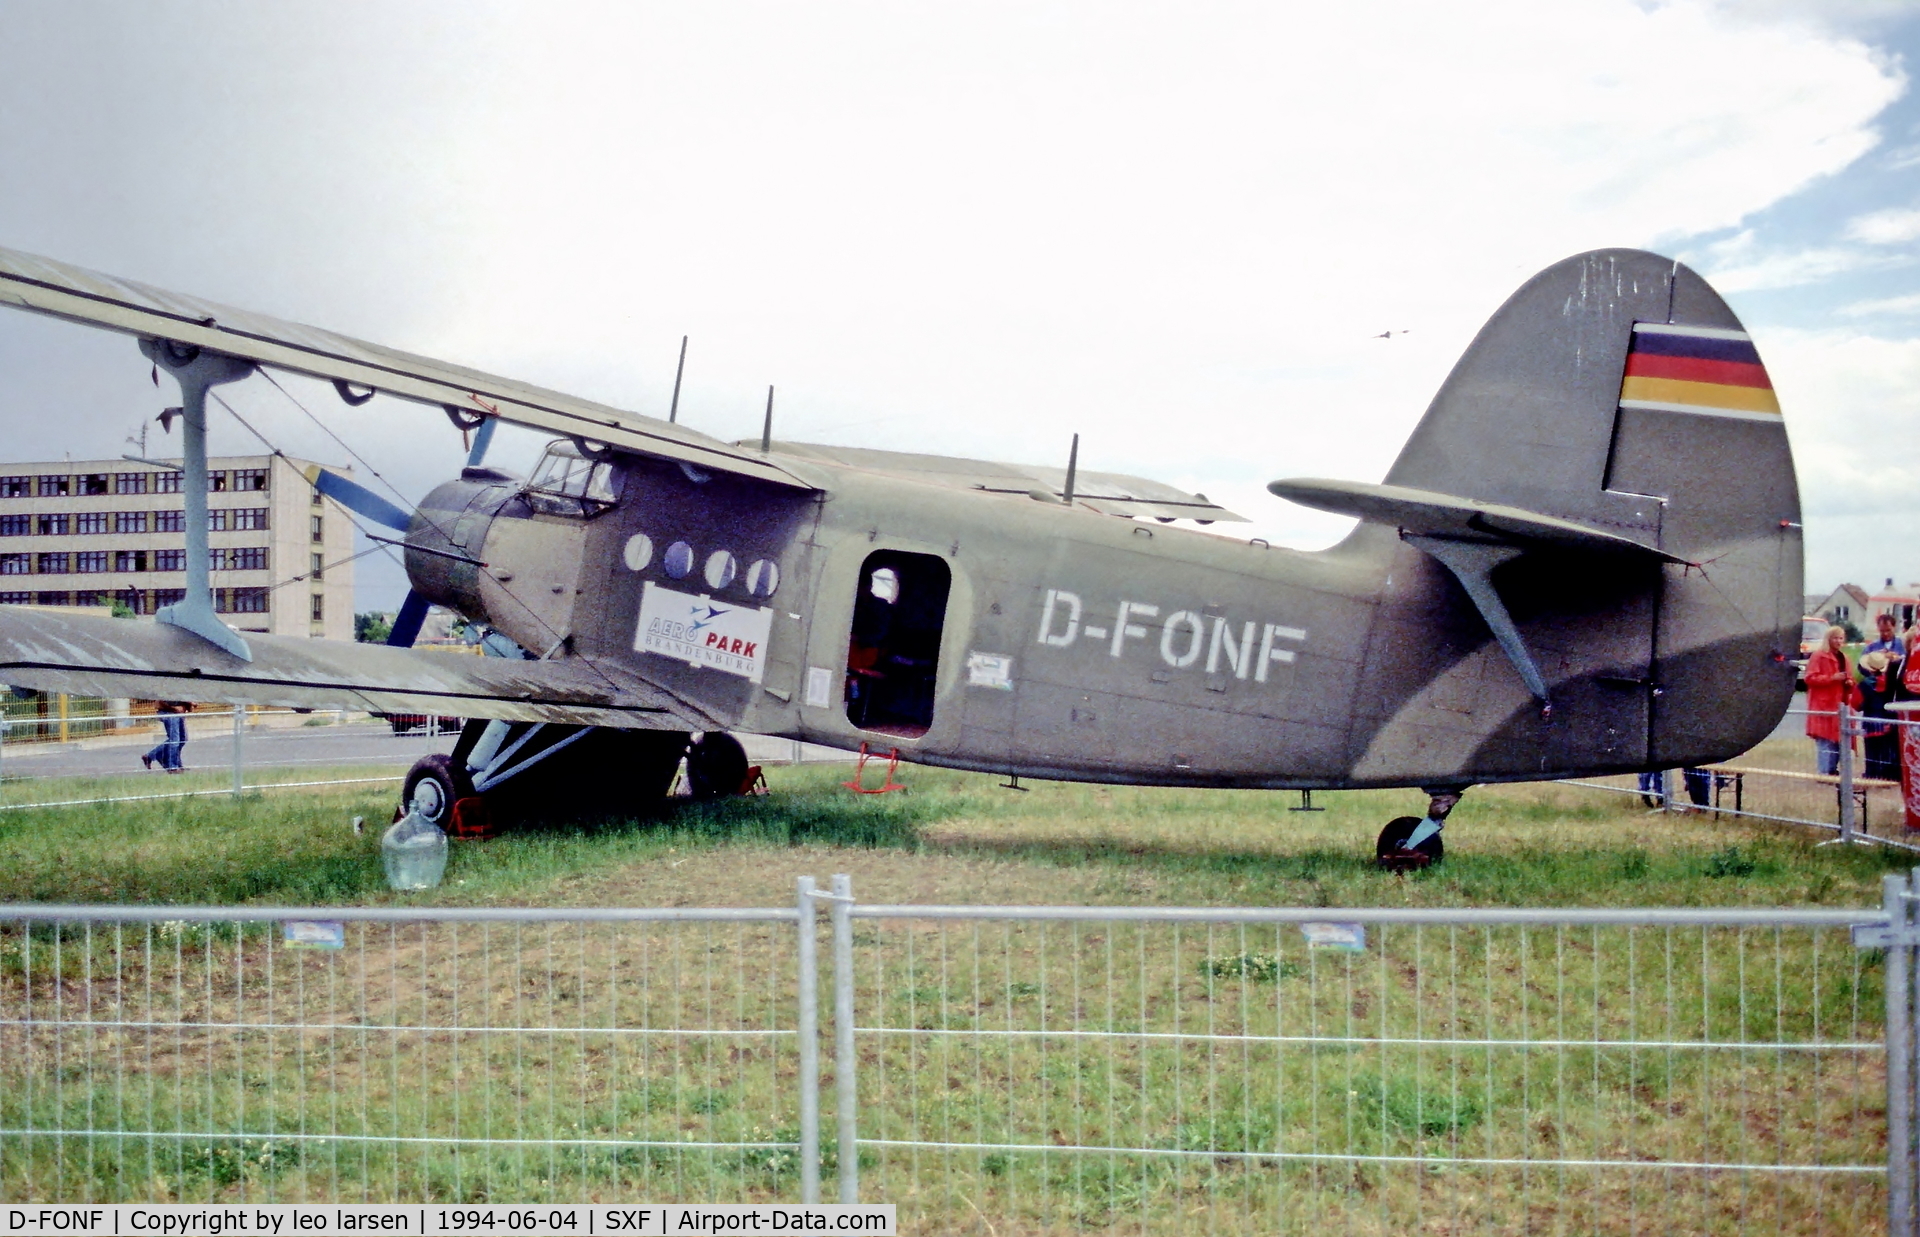 D-FONF, 1962 Antonov An-2TP C/N 117447319, Berlin Air Show 4.6.94